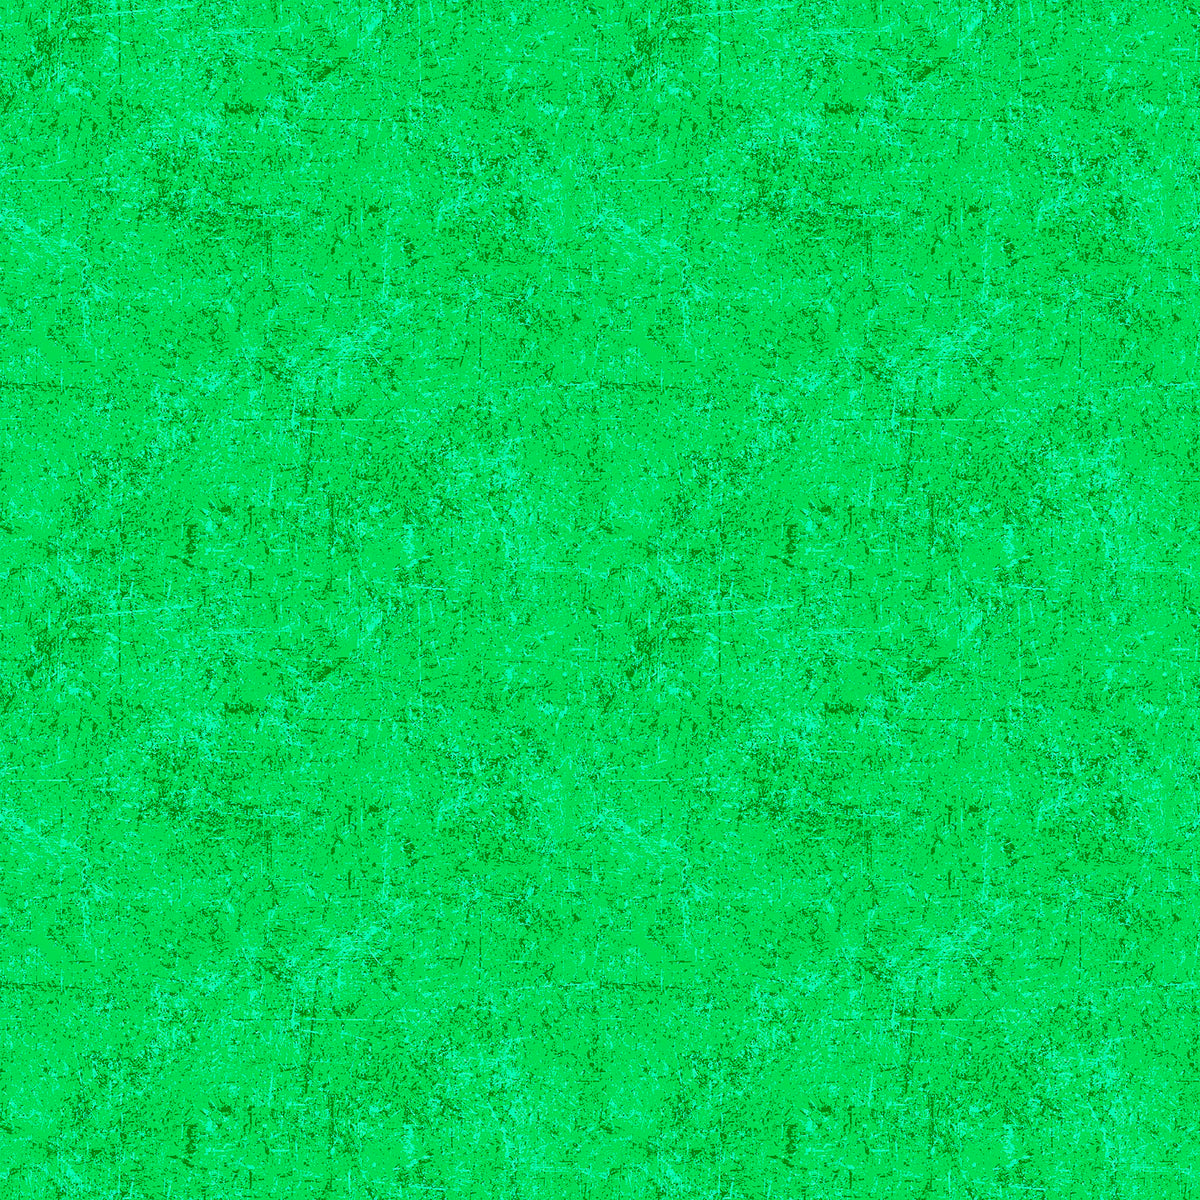 Glisten Quilt Fabric - Blender in Creme de Menthe Green - P10091-72